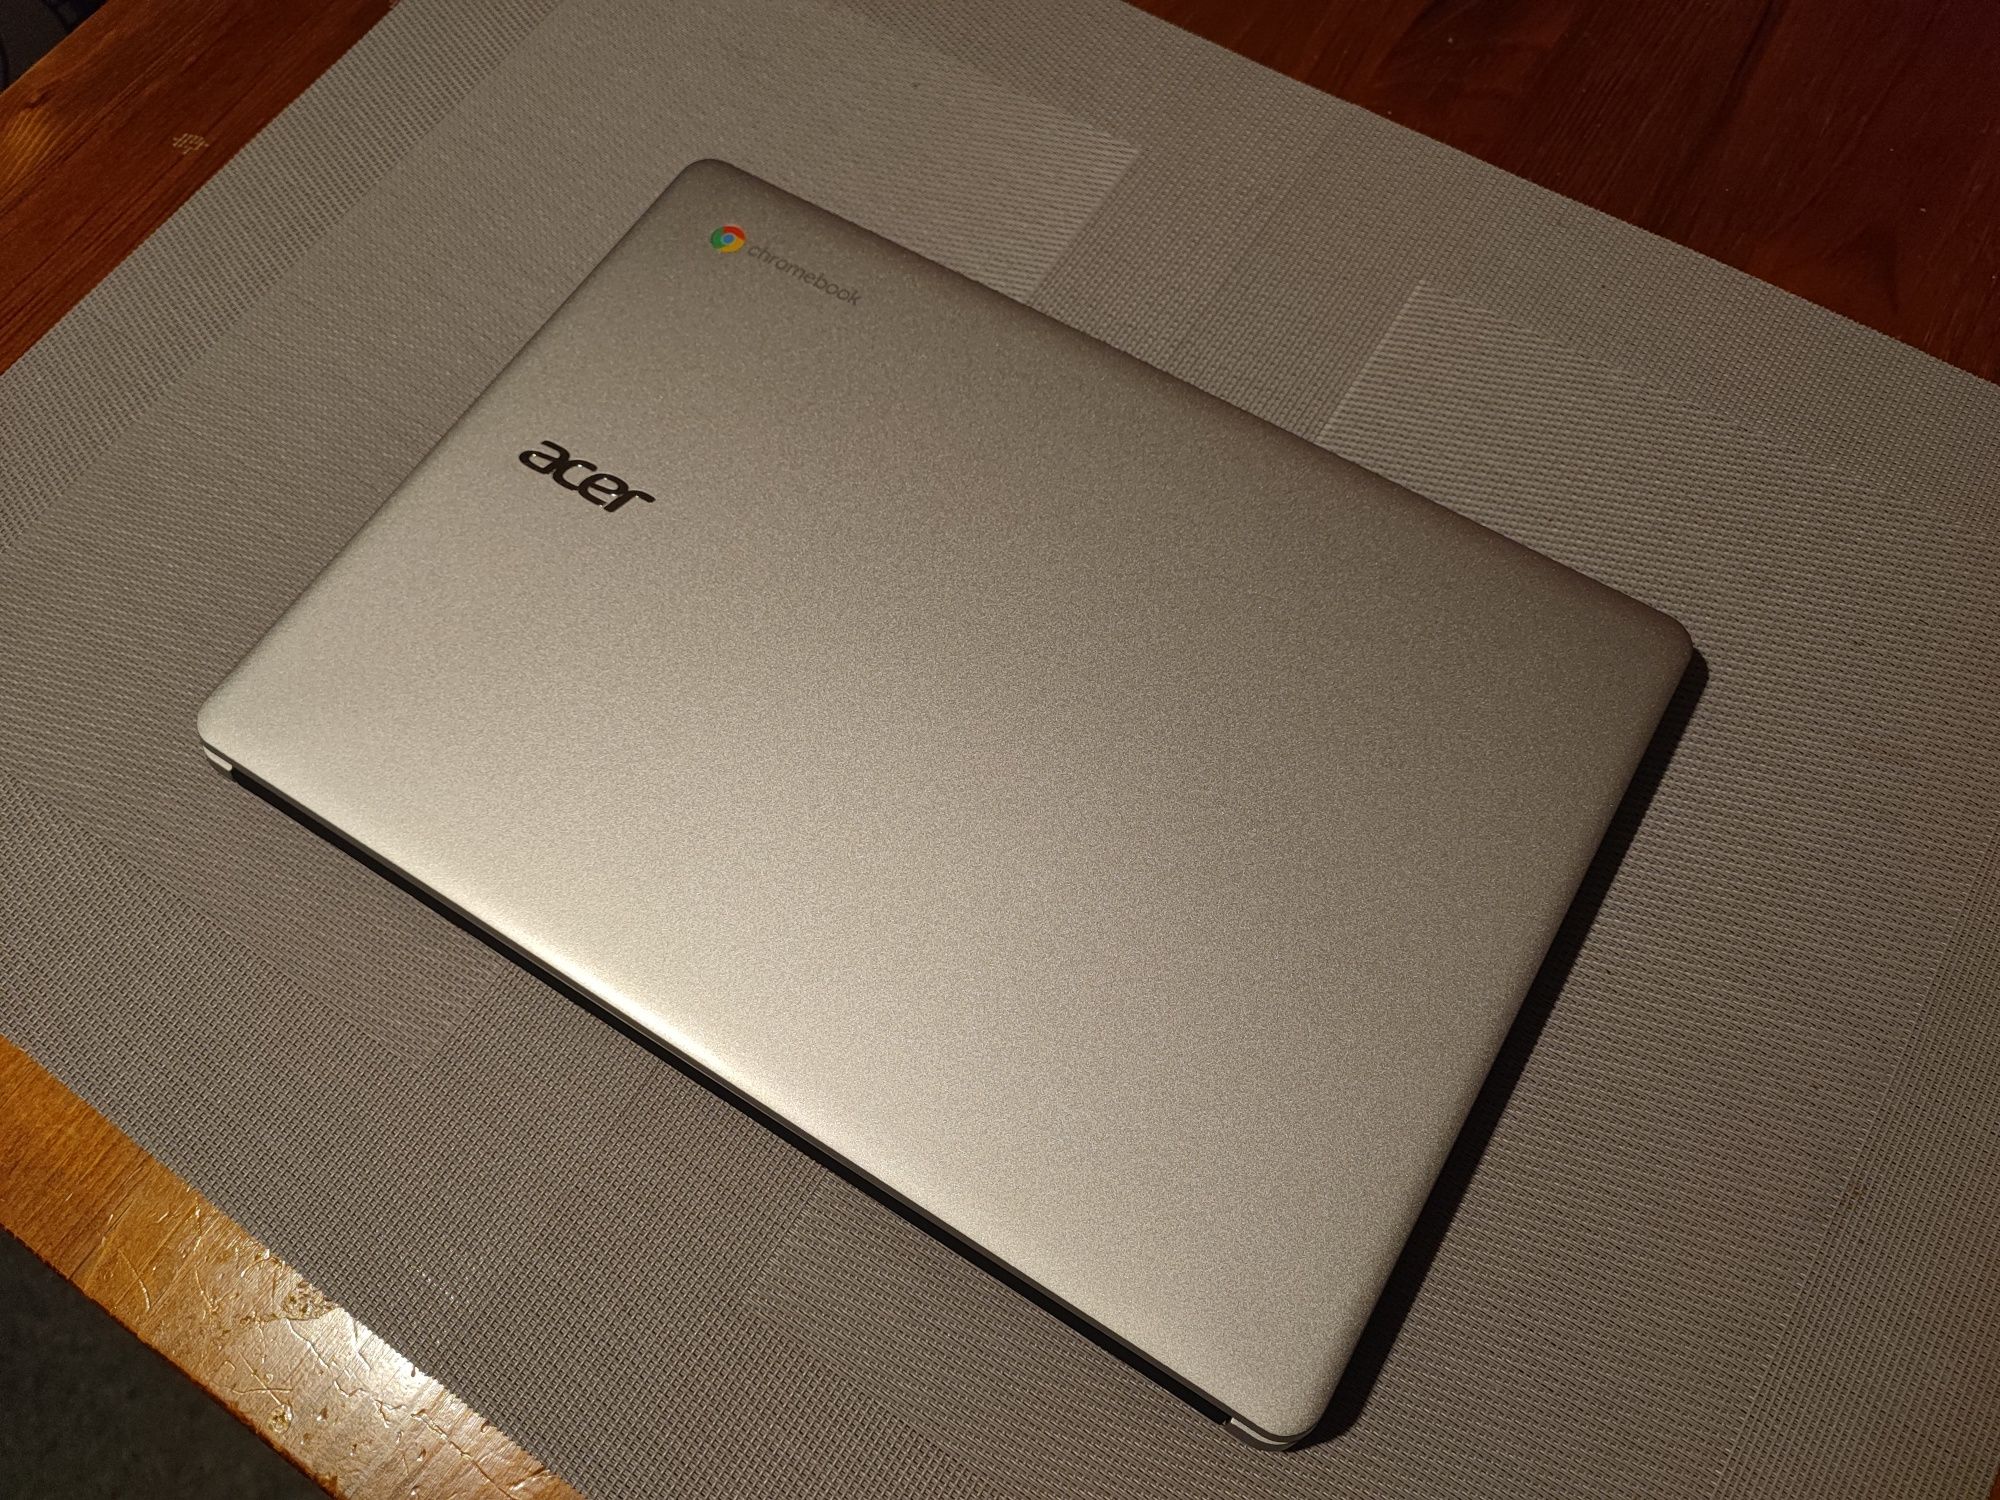 Laptop Chromebook Acer 314 (Cb314 2h K0SM) Nowy